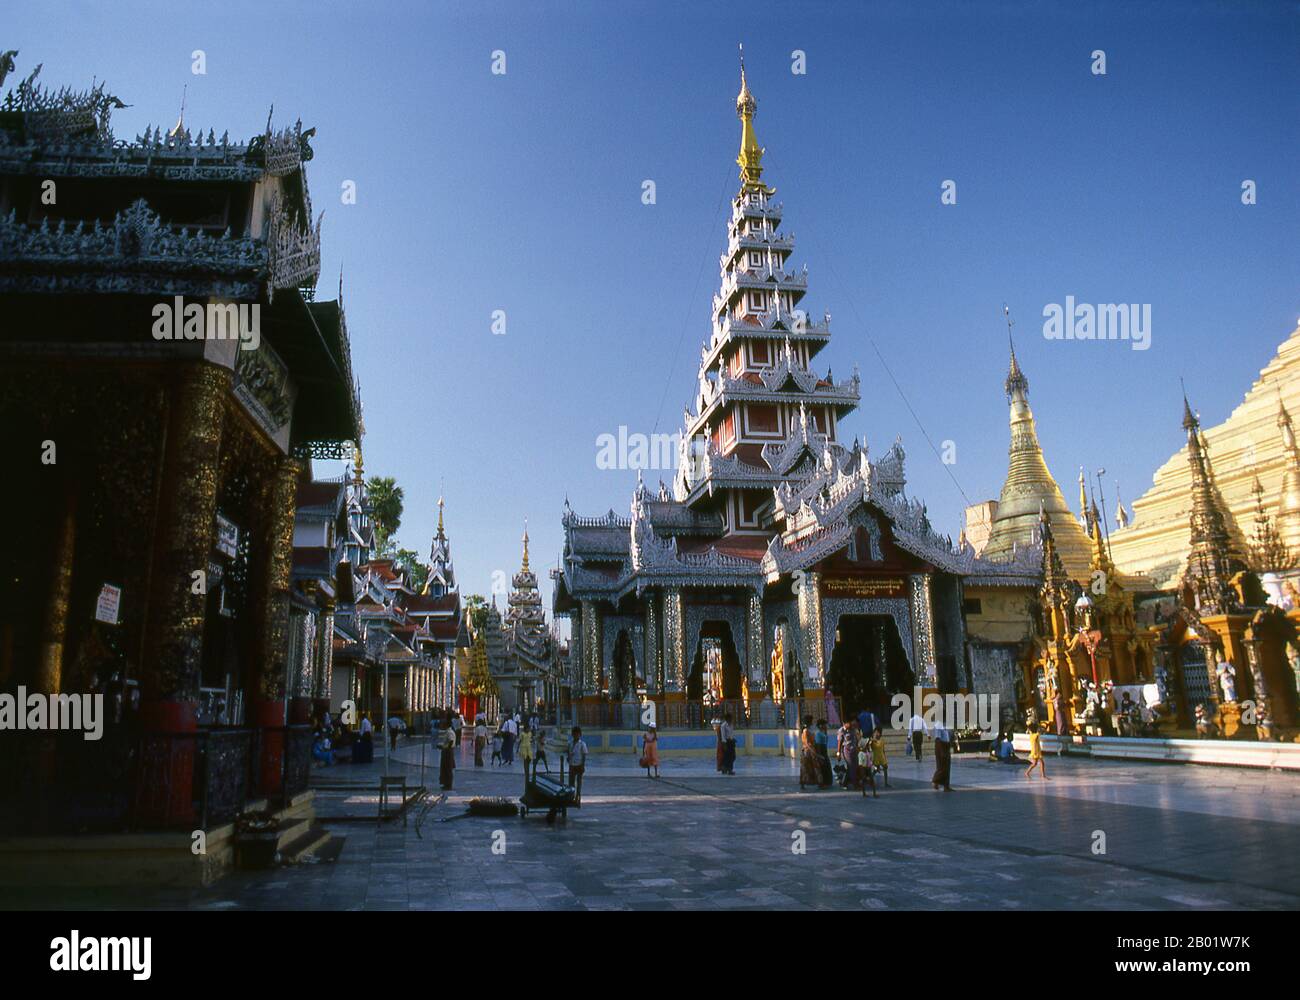 Birma/Myanmar: Im Shwedagon-Pagode-Komplex, Yangon (Rangun). Die goldene Stupa der Shwedagon-Pagode erhebt sich fast 100 m (330 ft) über ihrer Lage auf dem Singuttara Hill und ist mit 8.688 massiven Goldplatten überzogen. Diese zentrale Stupa ist von mehr als 100 anderen Gebäuden umgeben, darunter kleinere Stupas und Pavillons. Die Pagode war bereits gut etabliert, als Bagan Burma im 11. Jahrhundert dominierte. Königin Shinsawbu, die im 15. Jahrhundert regierte, soll der Pagode ihre heutige Form gegeben haben. Sie baute auch die Terrassen und Mauern um die Stupa herum. Stockfoto